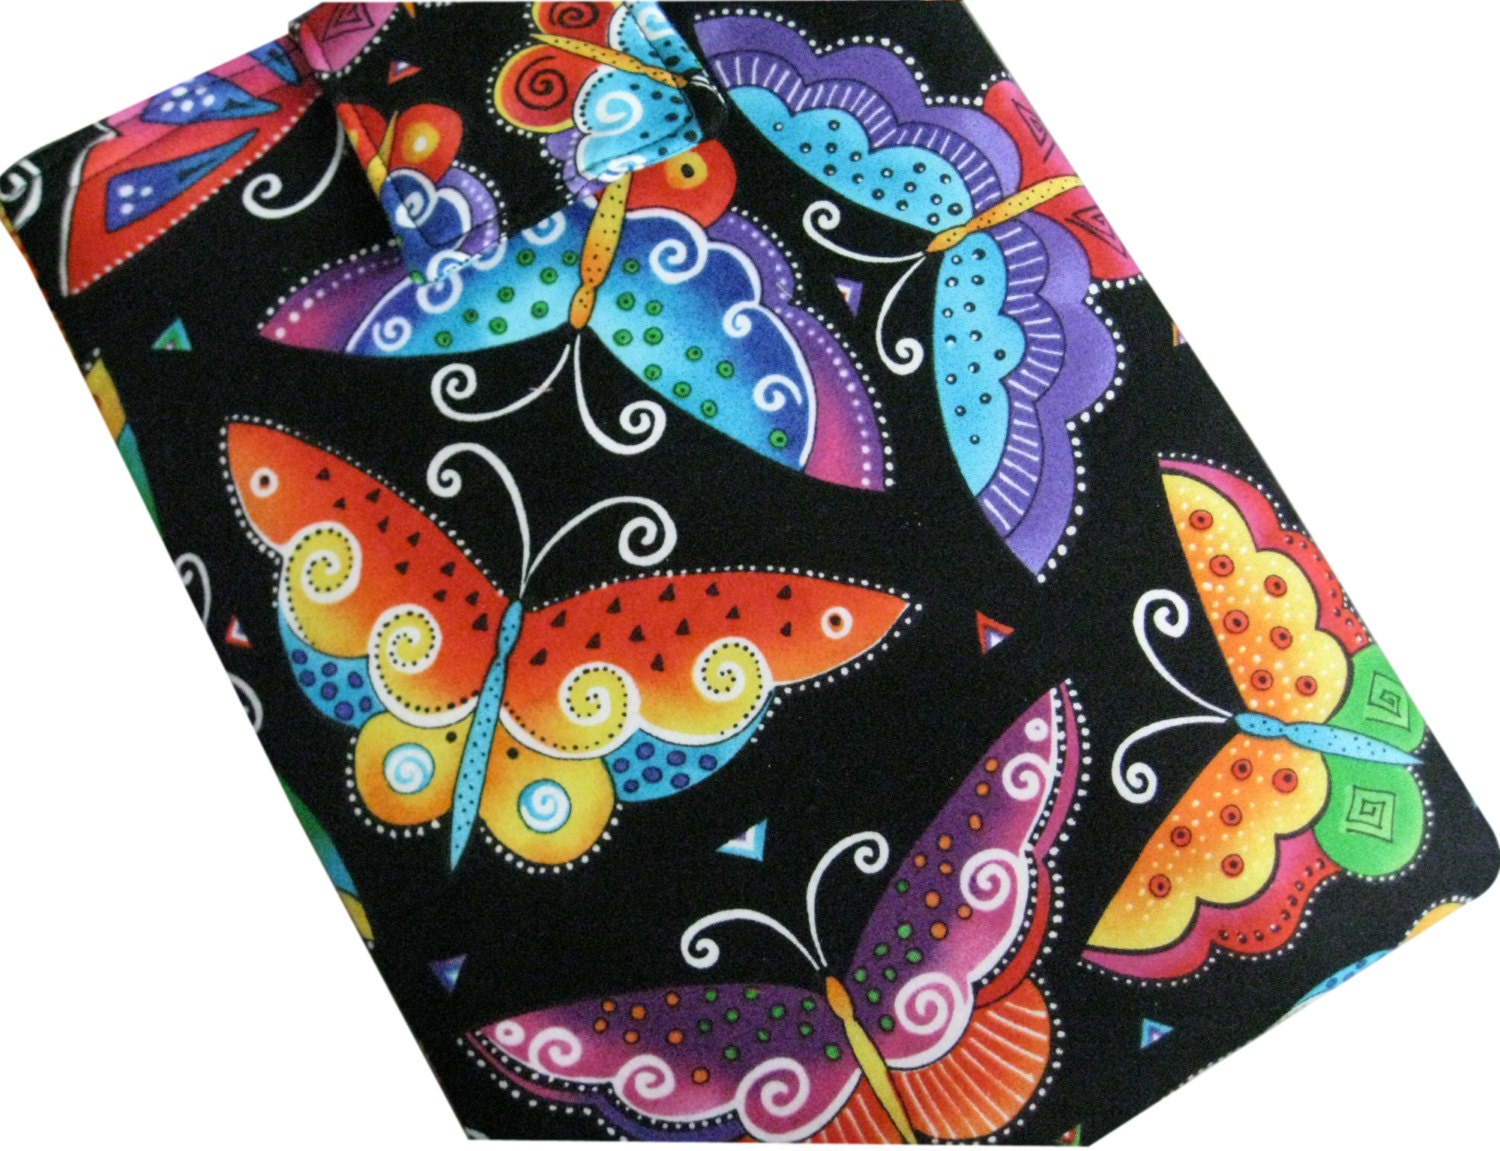 I-Pad or Tablet Padded Sleeve in Laurel Burch Butterflies Fabric - Sieberdesigns